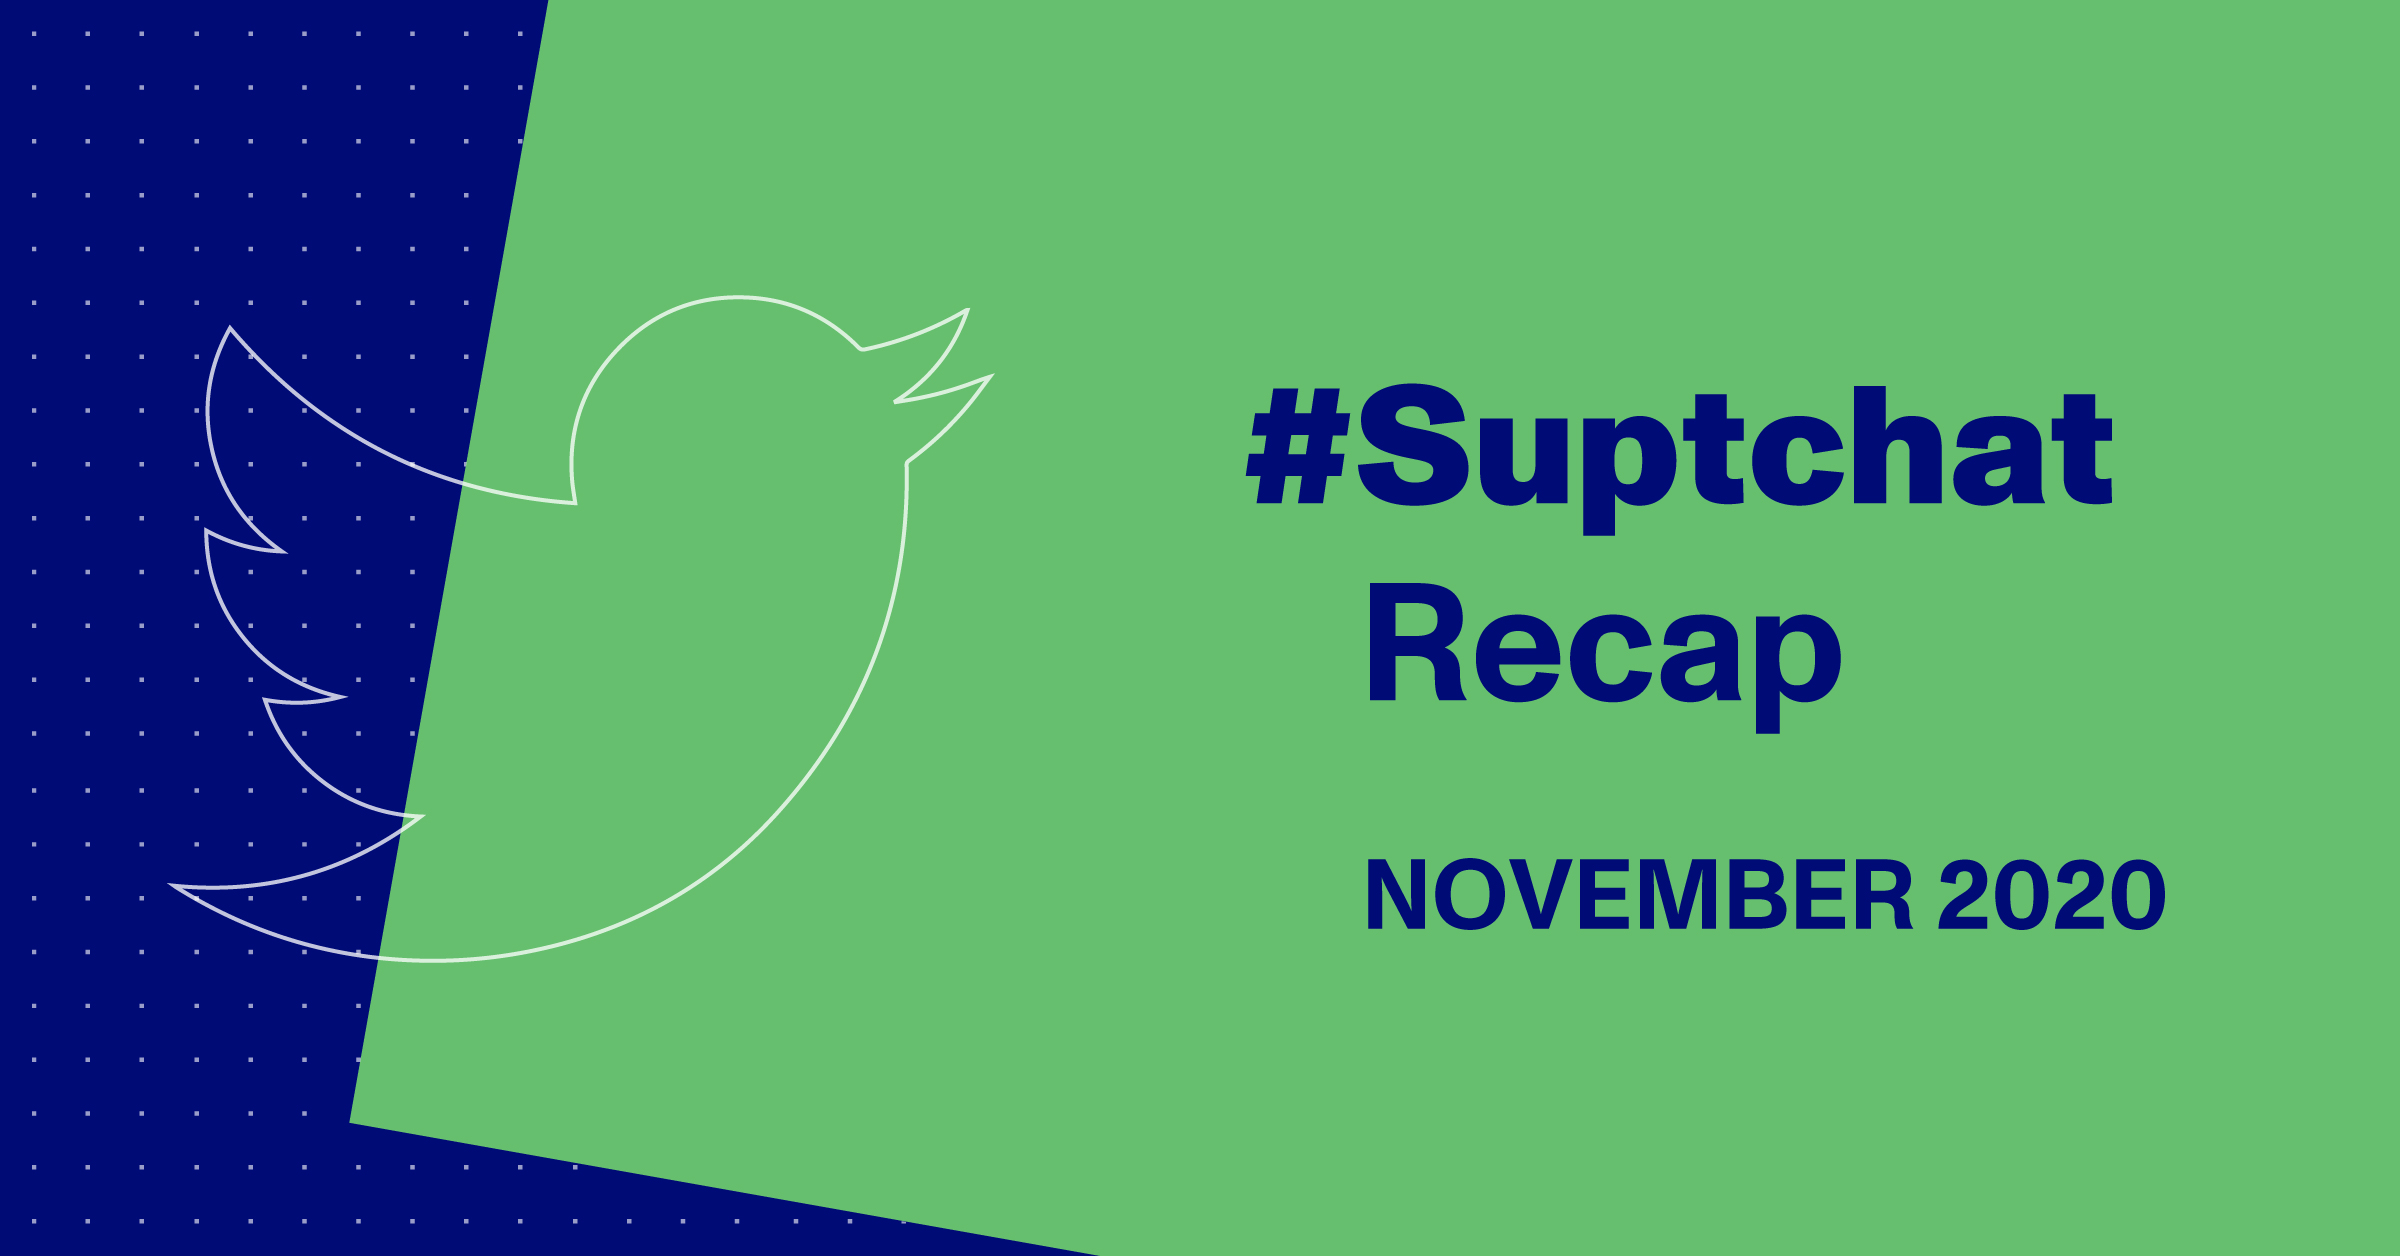 Blog Thumbnail of #Suptchat Recap from November 2020